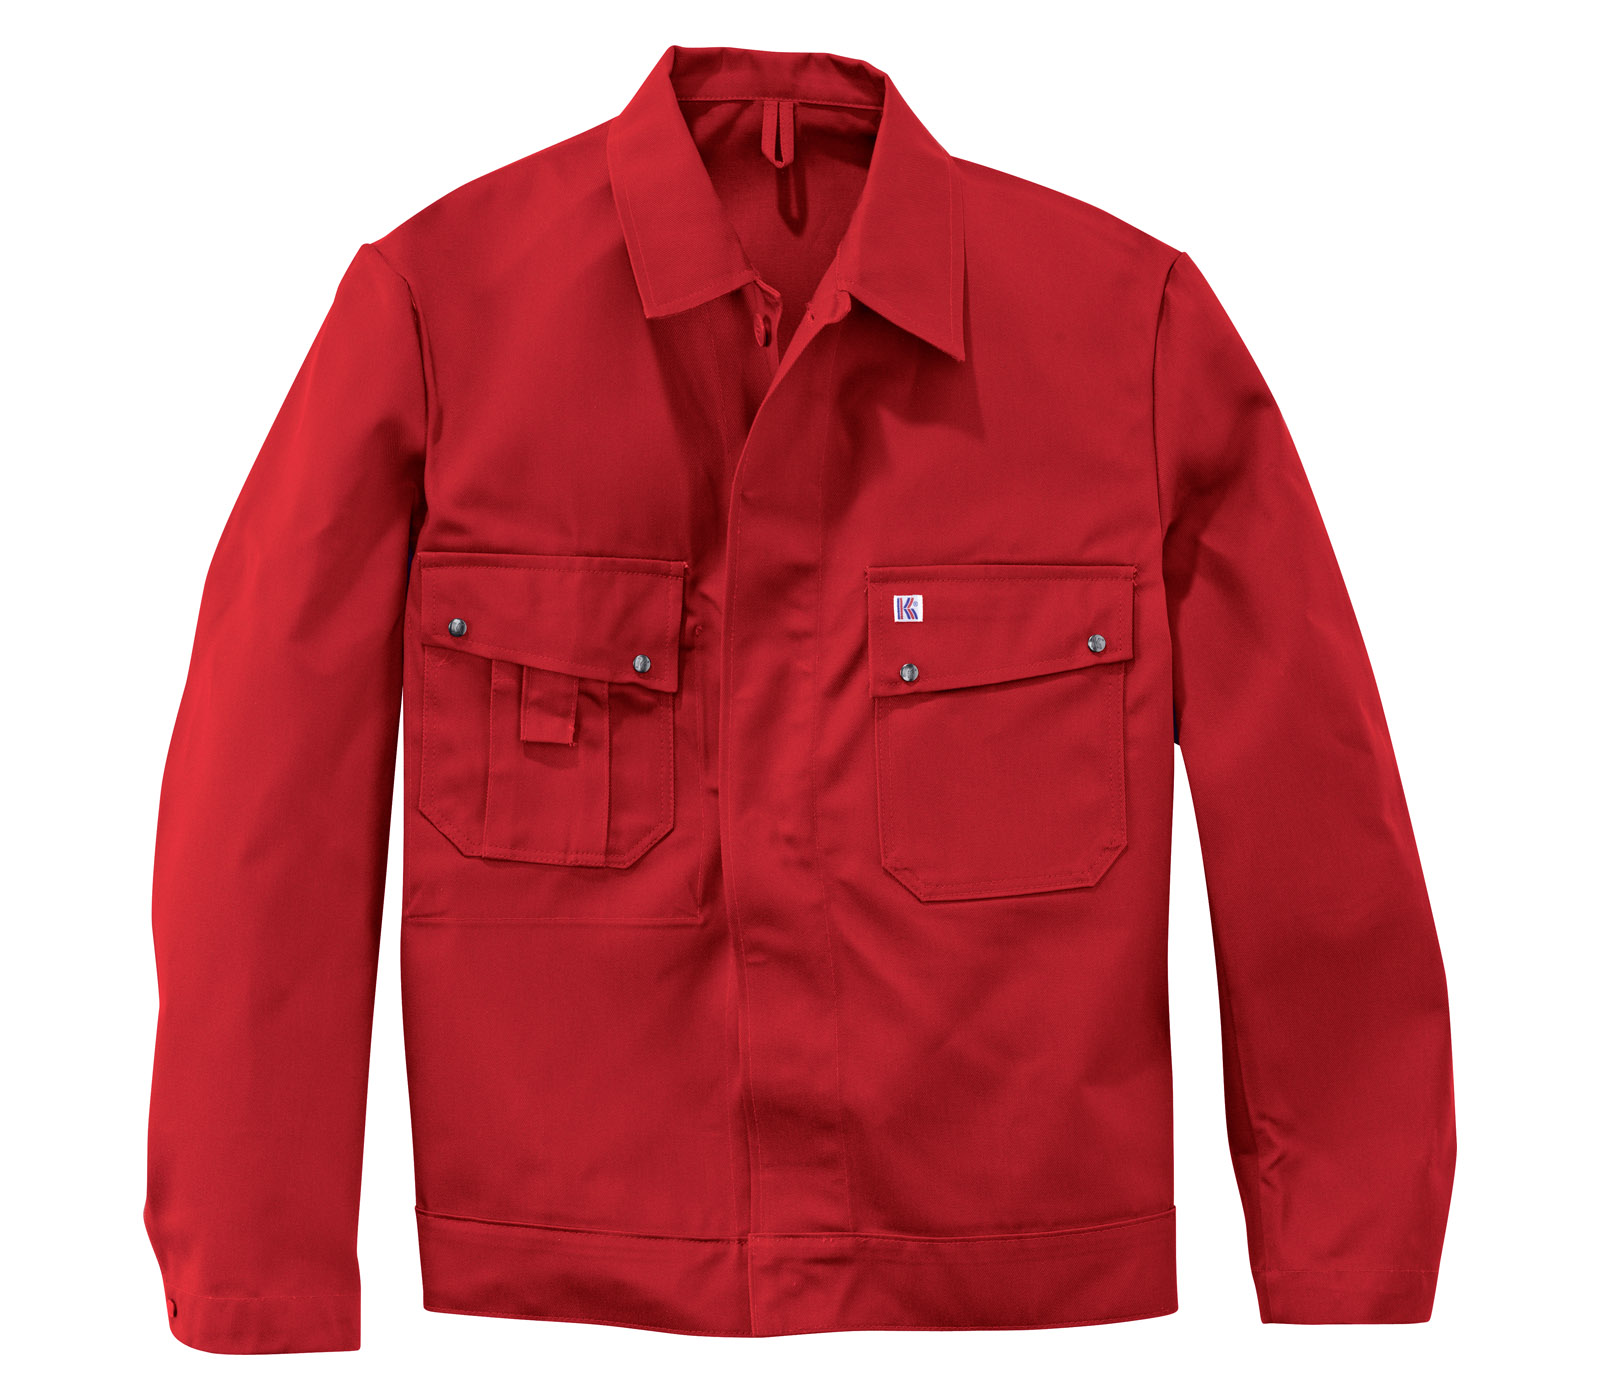 KÜBLER Bundjacke Arbeitsjacke Berufsjacke Schutzjacke Arbeitskleidung Berufskleidung rot